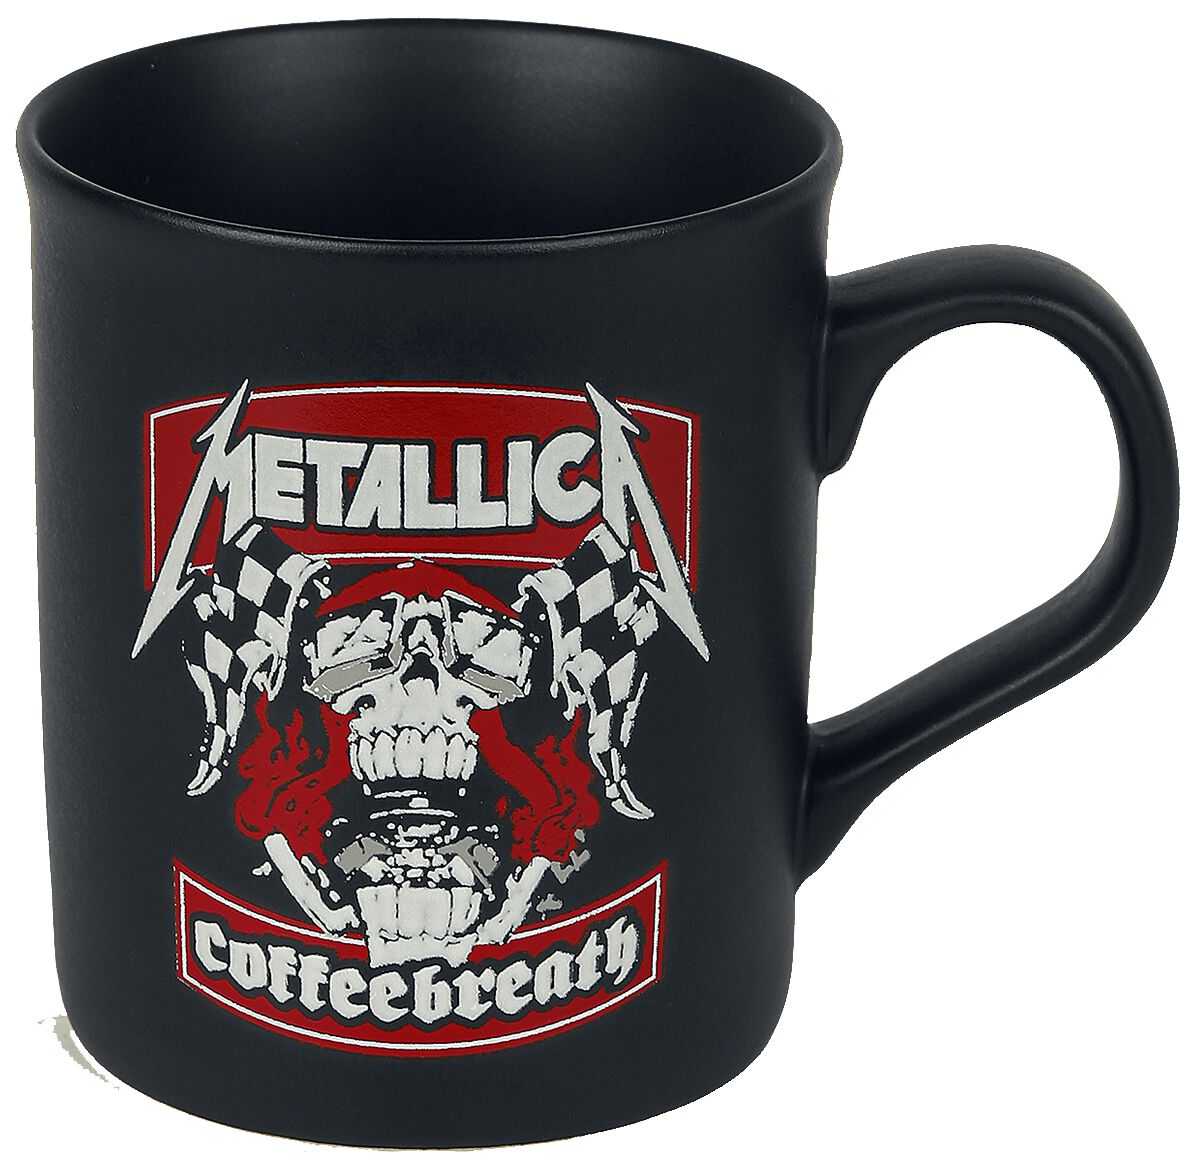 Metallica Tasse - Coffeebreath - mattschwarz  - Lizenziertes Merchandise!